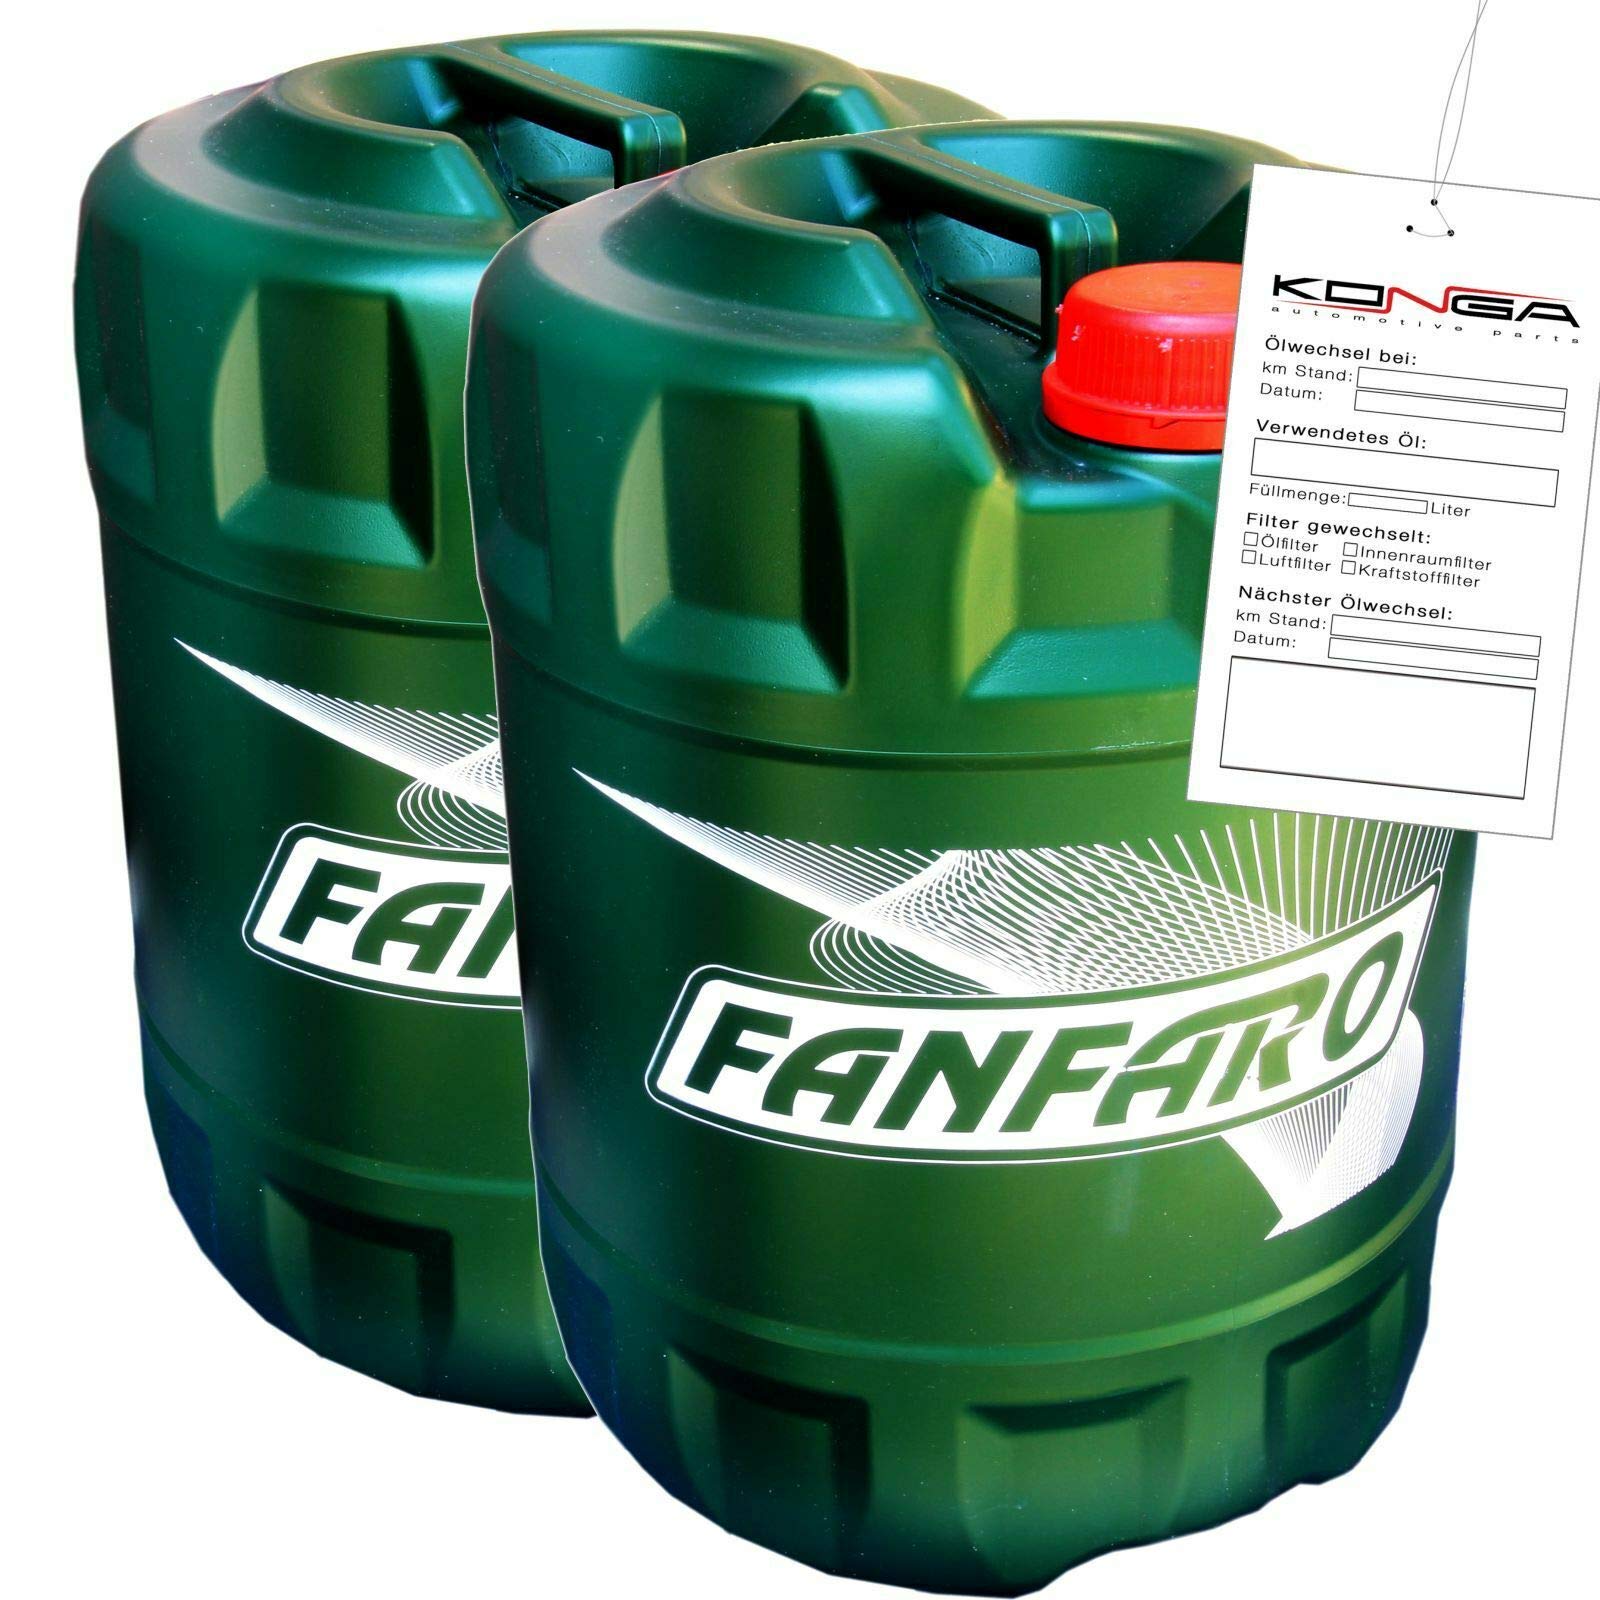 40 Liter HLP46 Fanfaro 2102 Hydrauliköl 'Hydro ISO 46' VDMA 24318 - DIN 51524/2 von FANFARO